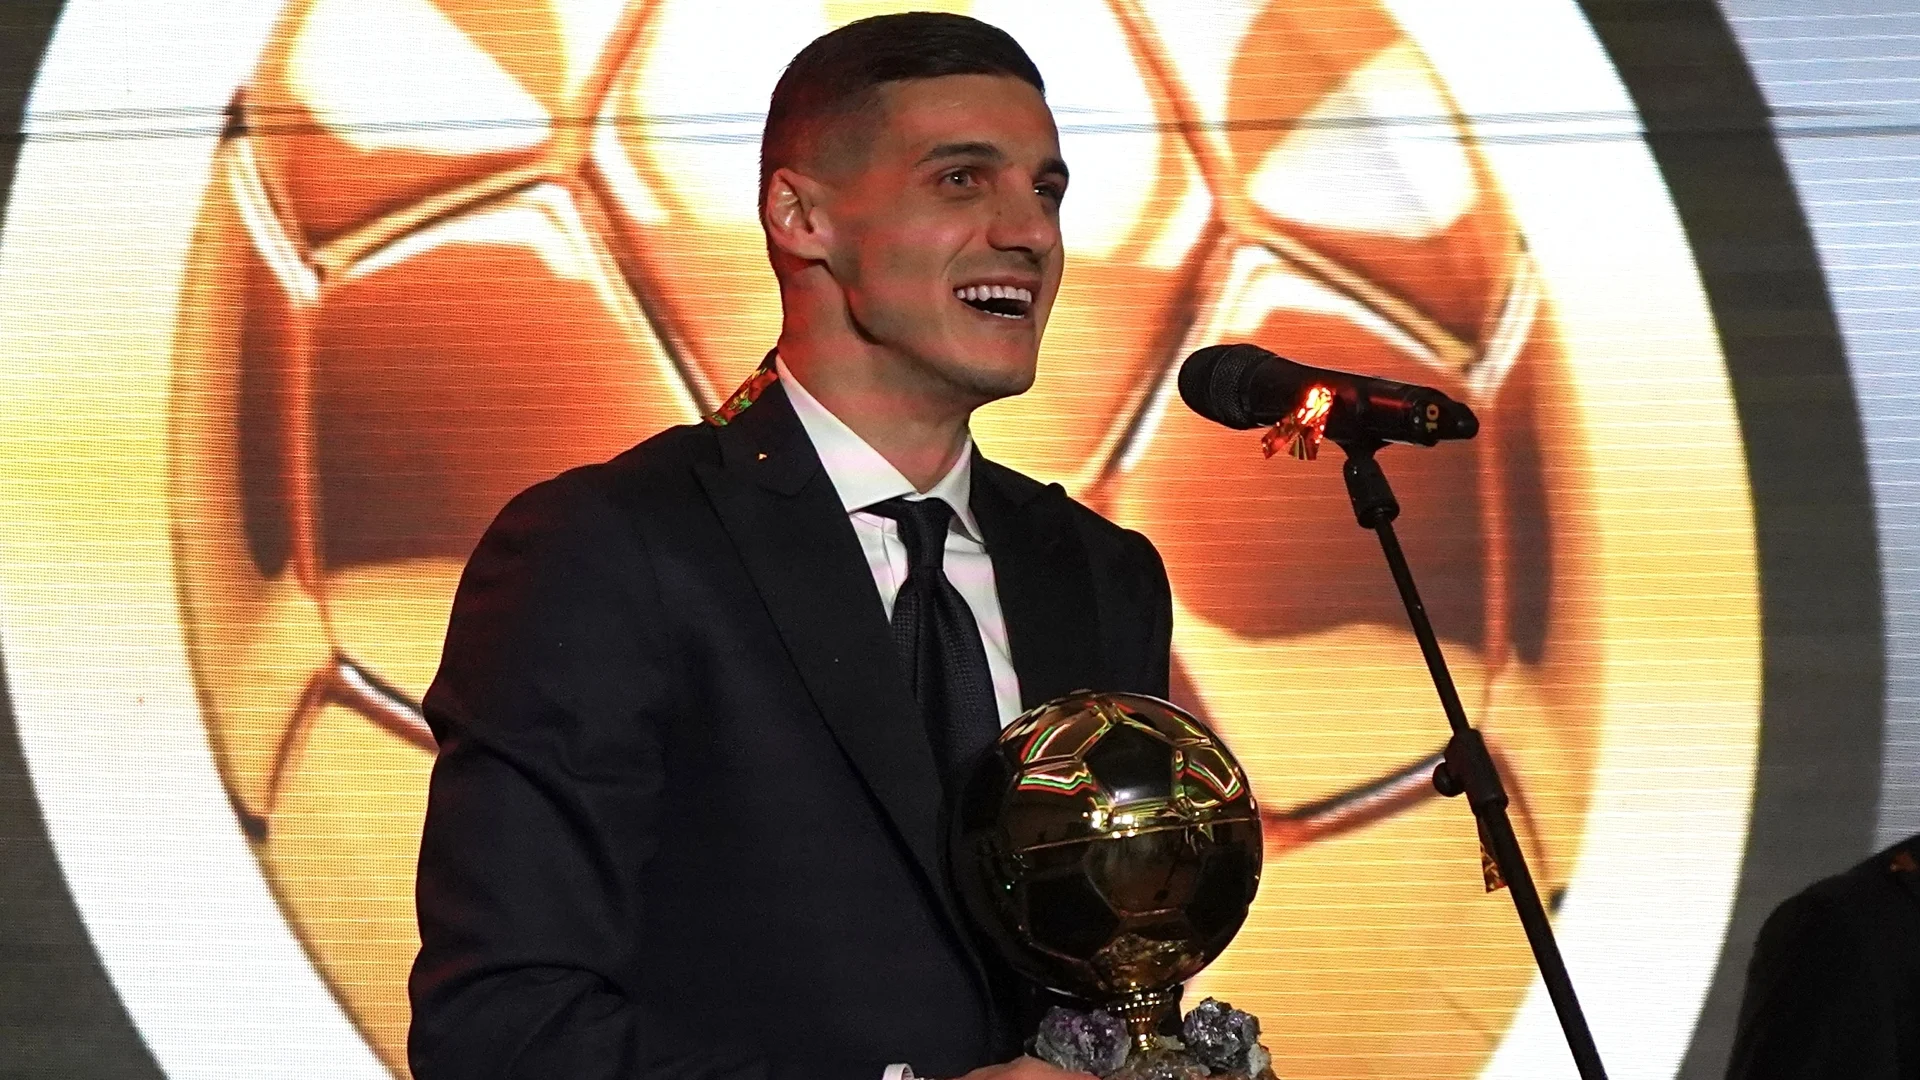 Кирил Десподов е фаворит за Играч на сезона в гръцката Суперлига